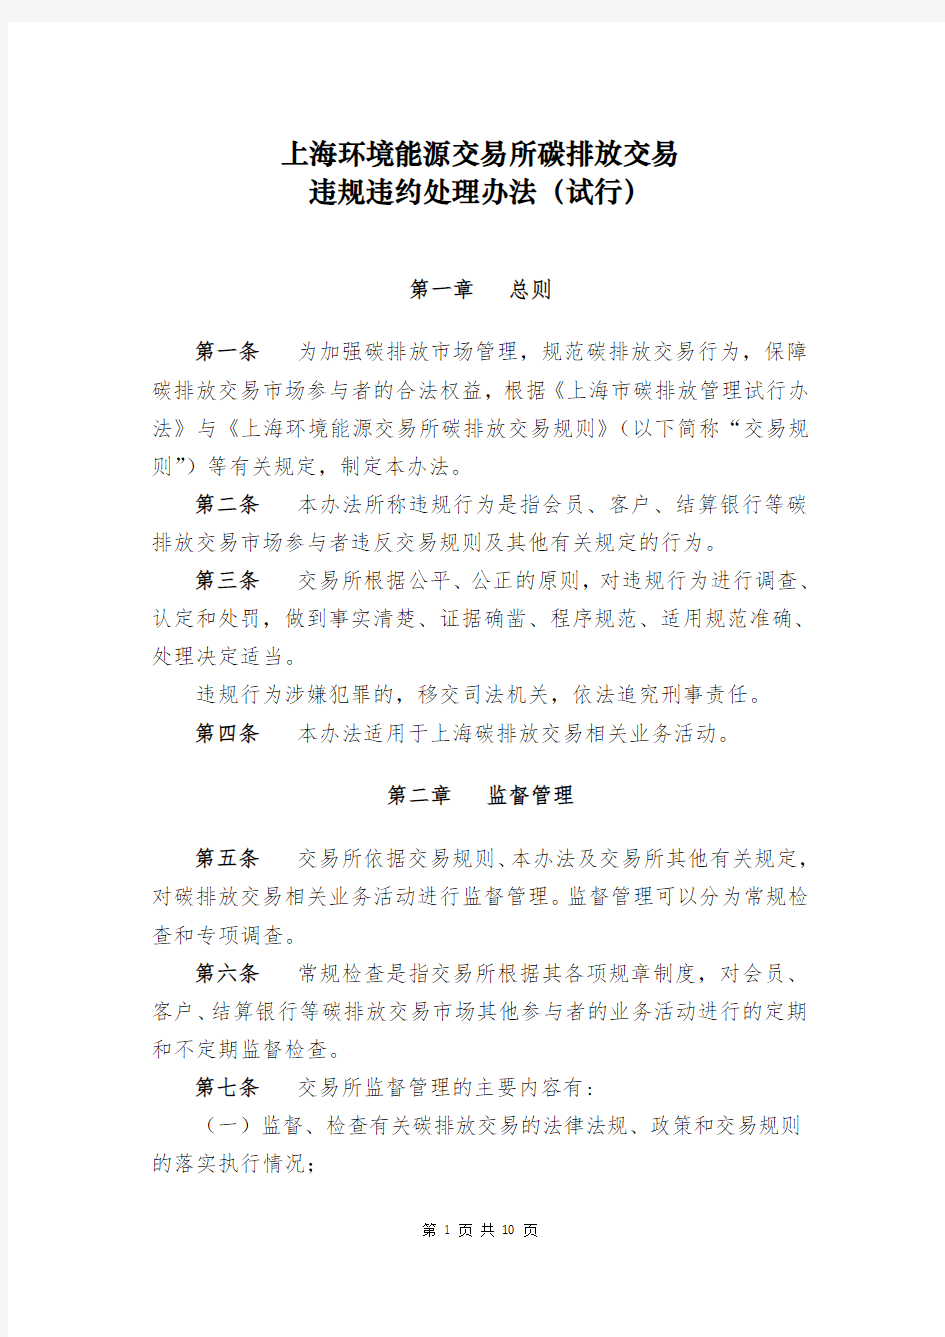 上海环境能源交易所碳排放交易违规违约处理办法(试行)